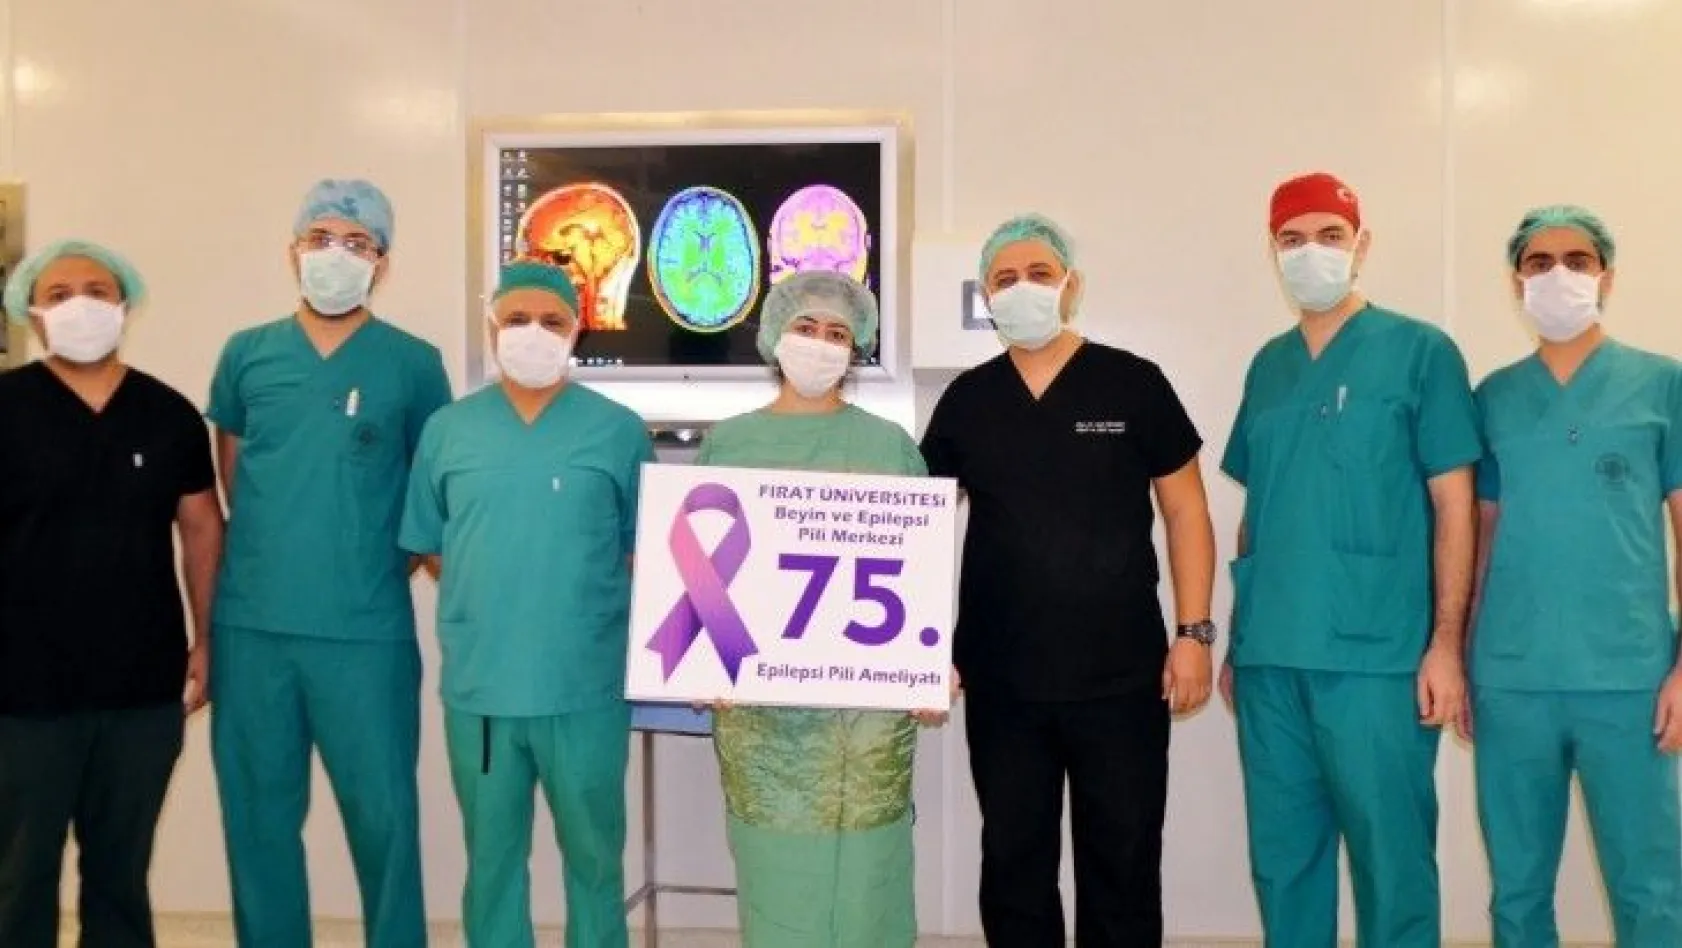 Epilepsi pili operasyonu sara hastalarının umudu oldu